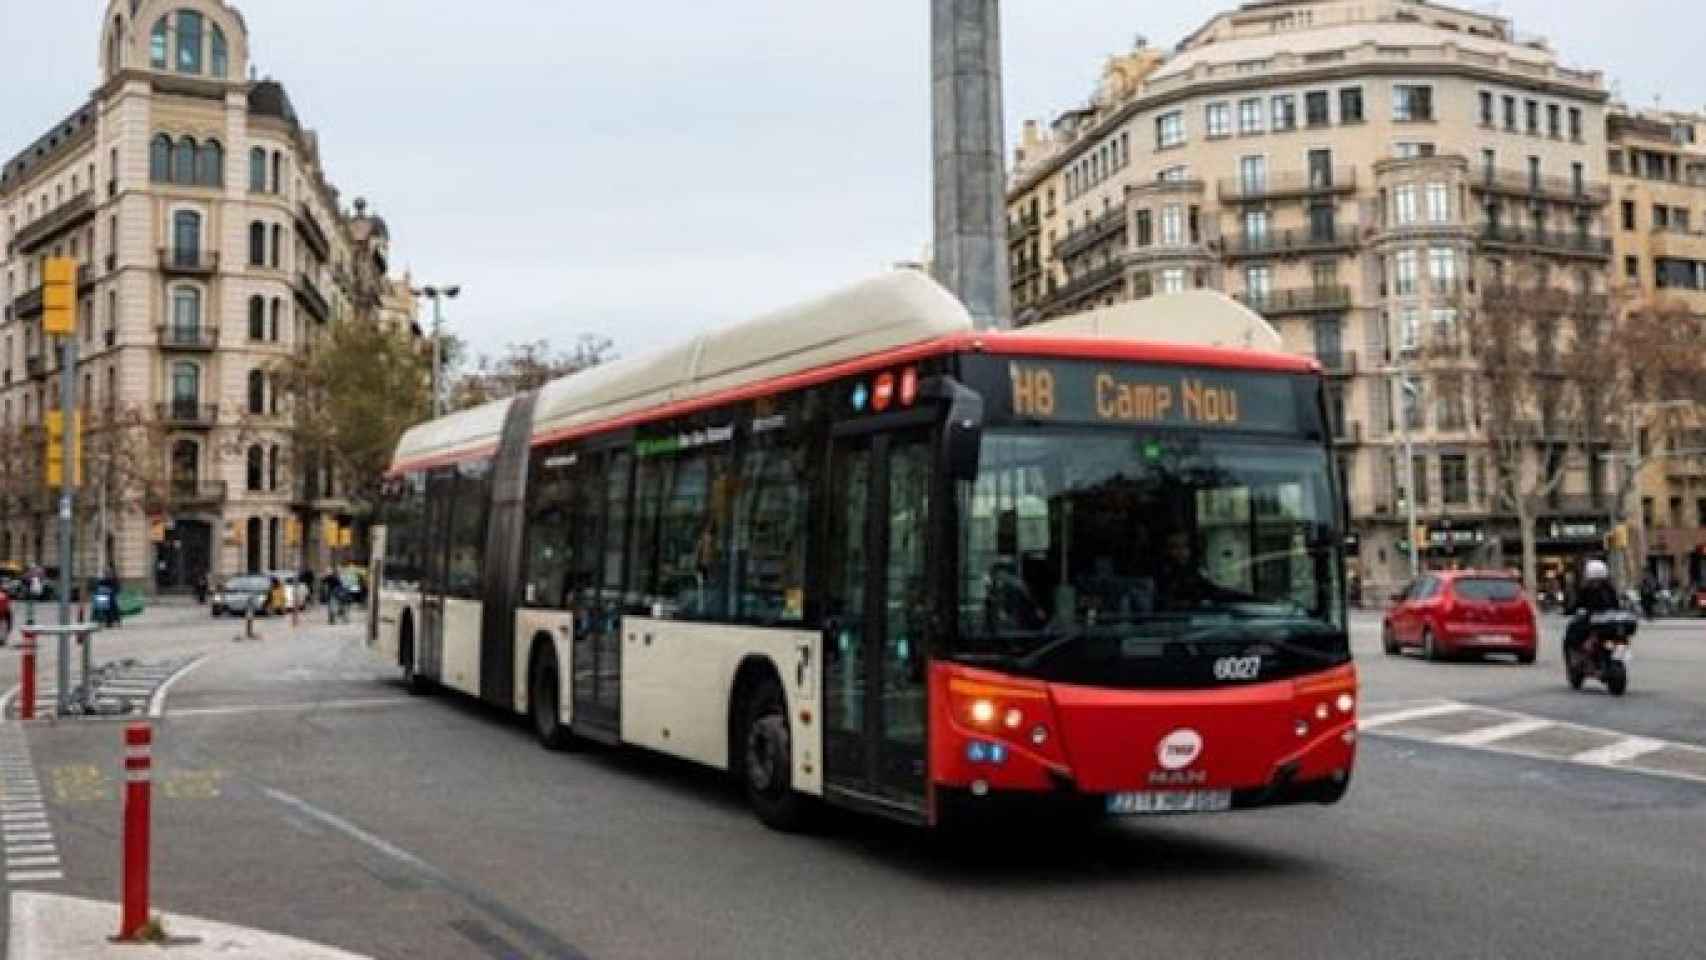 El bus H8 de TMB, durante su recorrido entre el Camp Nou y la Maquinista